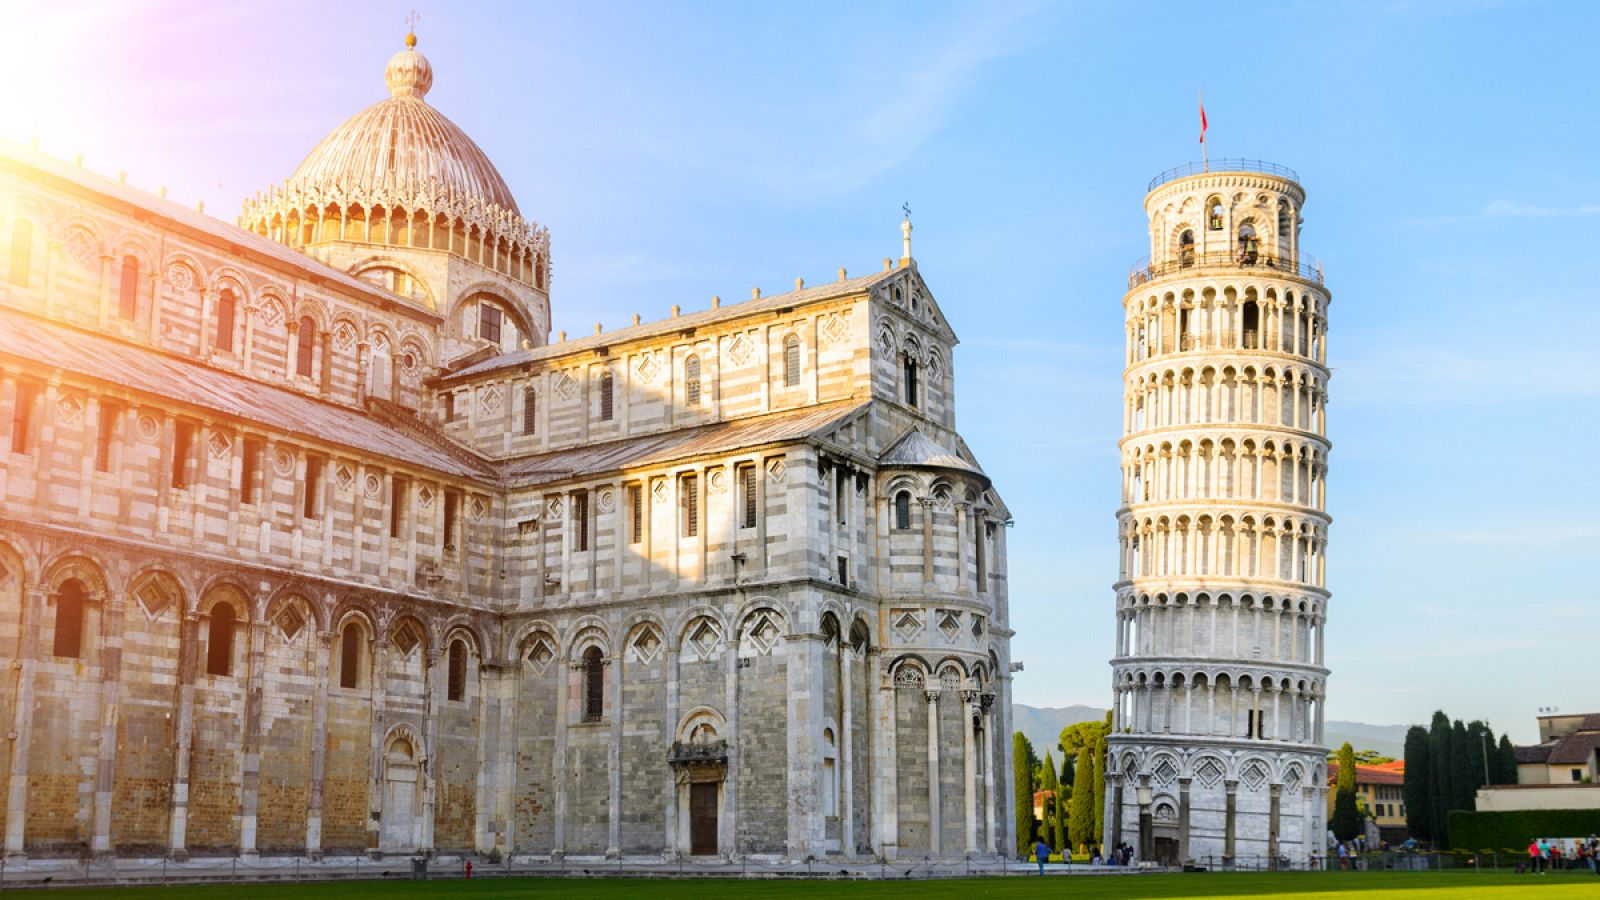 La resistencia de la torre de Pisa a los terremotos es un misterio que ha desconcertado a los ingenieros desde hace muchos años.